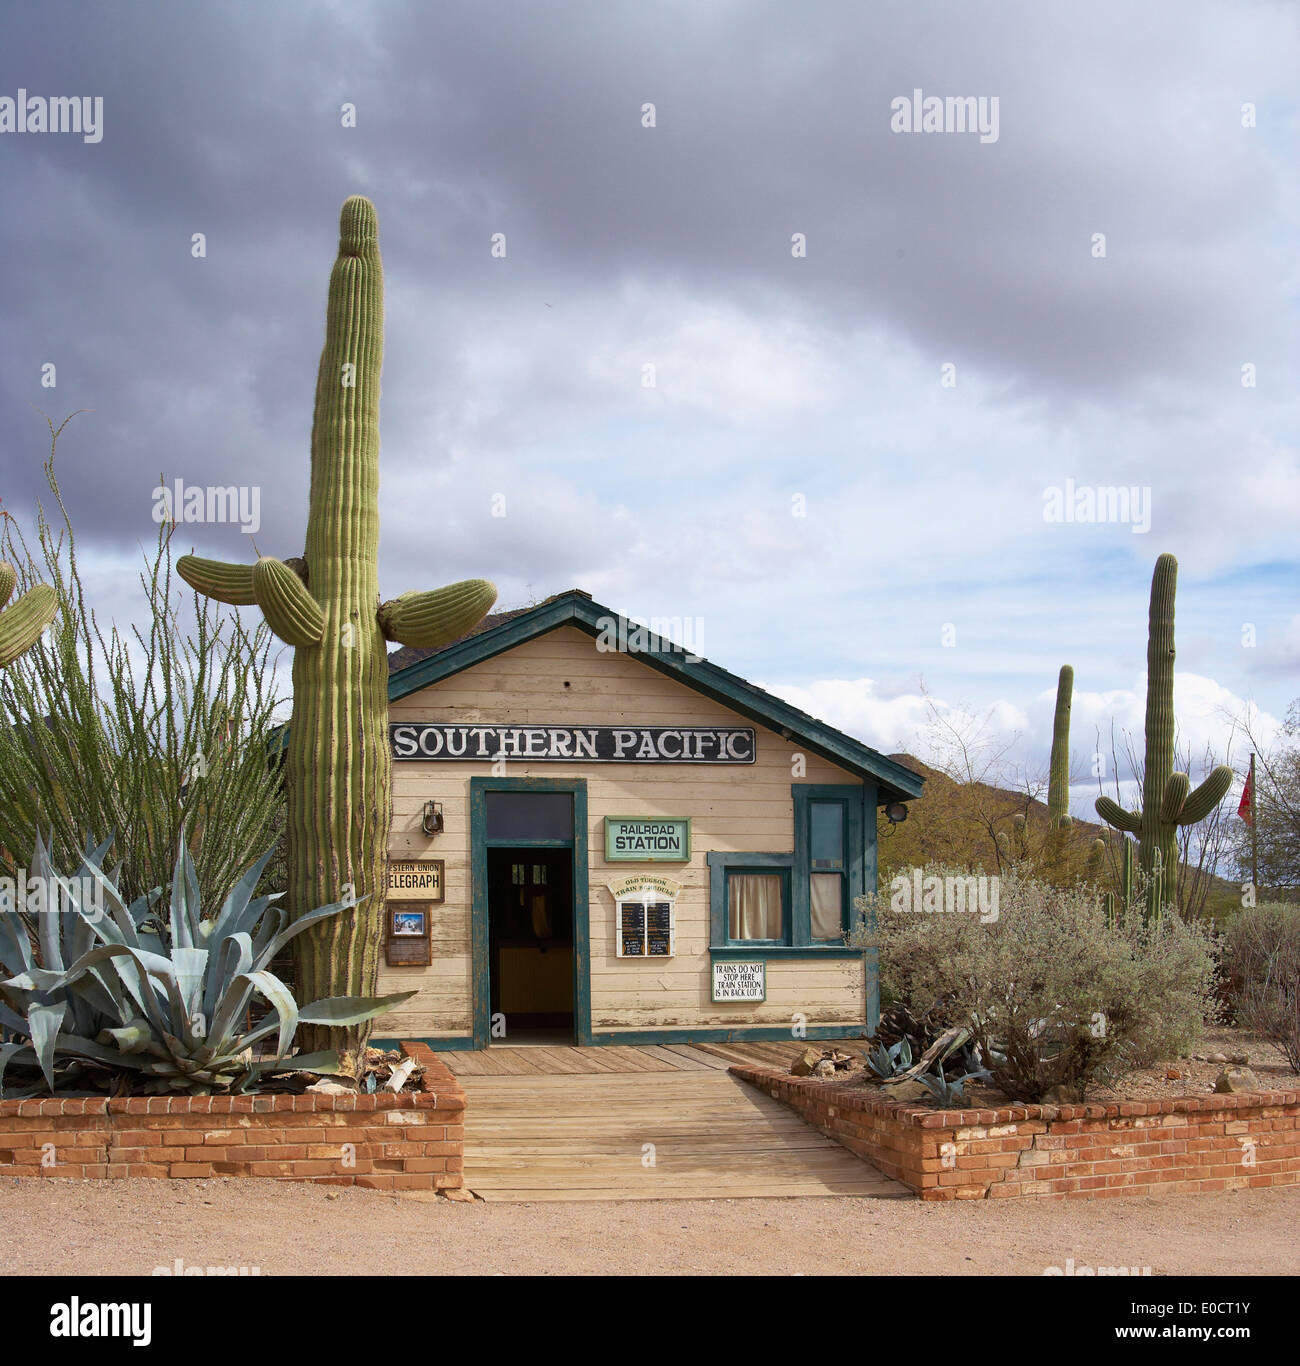 Maison en bois dans un plateau de tournage de film, Old Tucson Studios, désert de Sonora, en Arizona, USA, Amérique Latine Banque D'Images